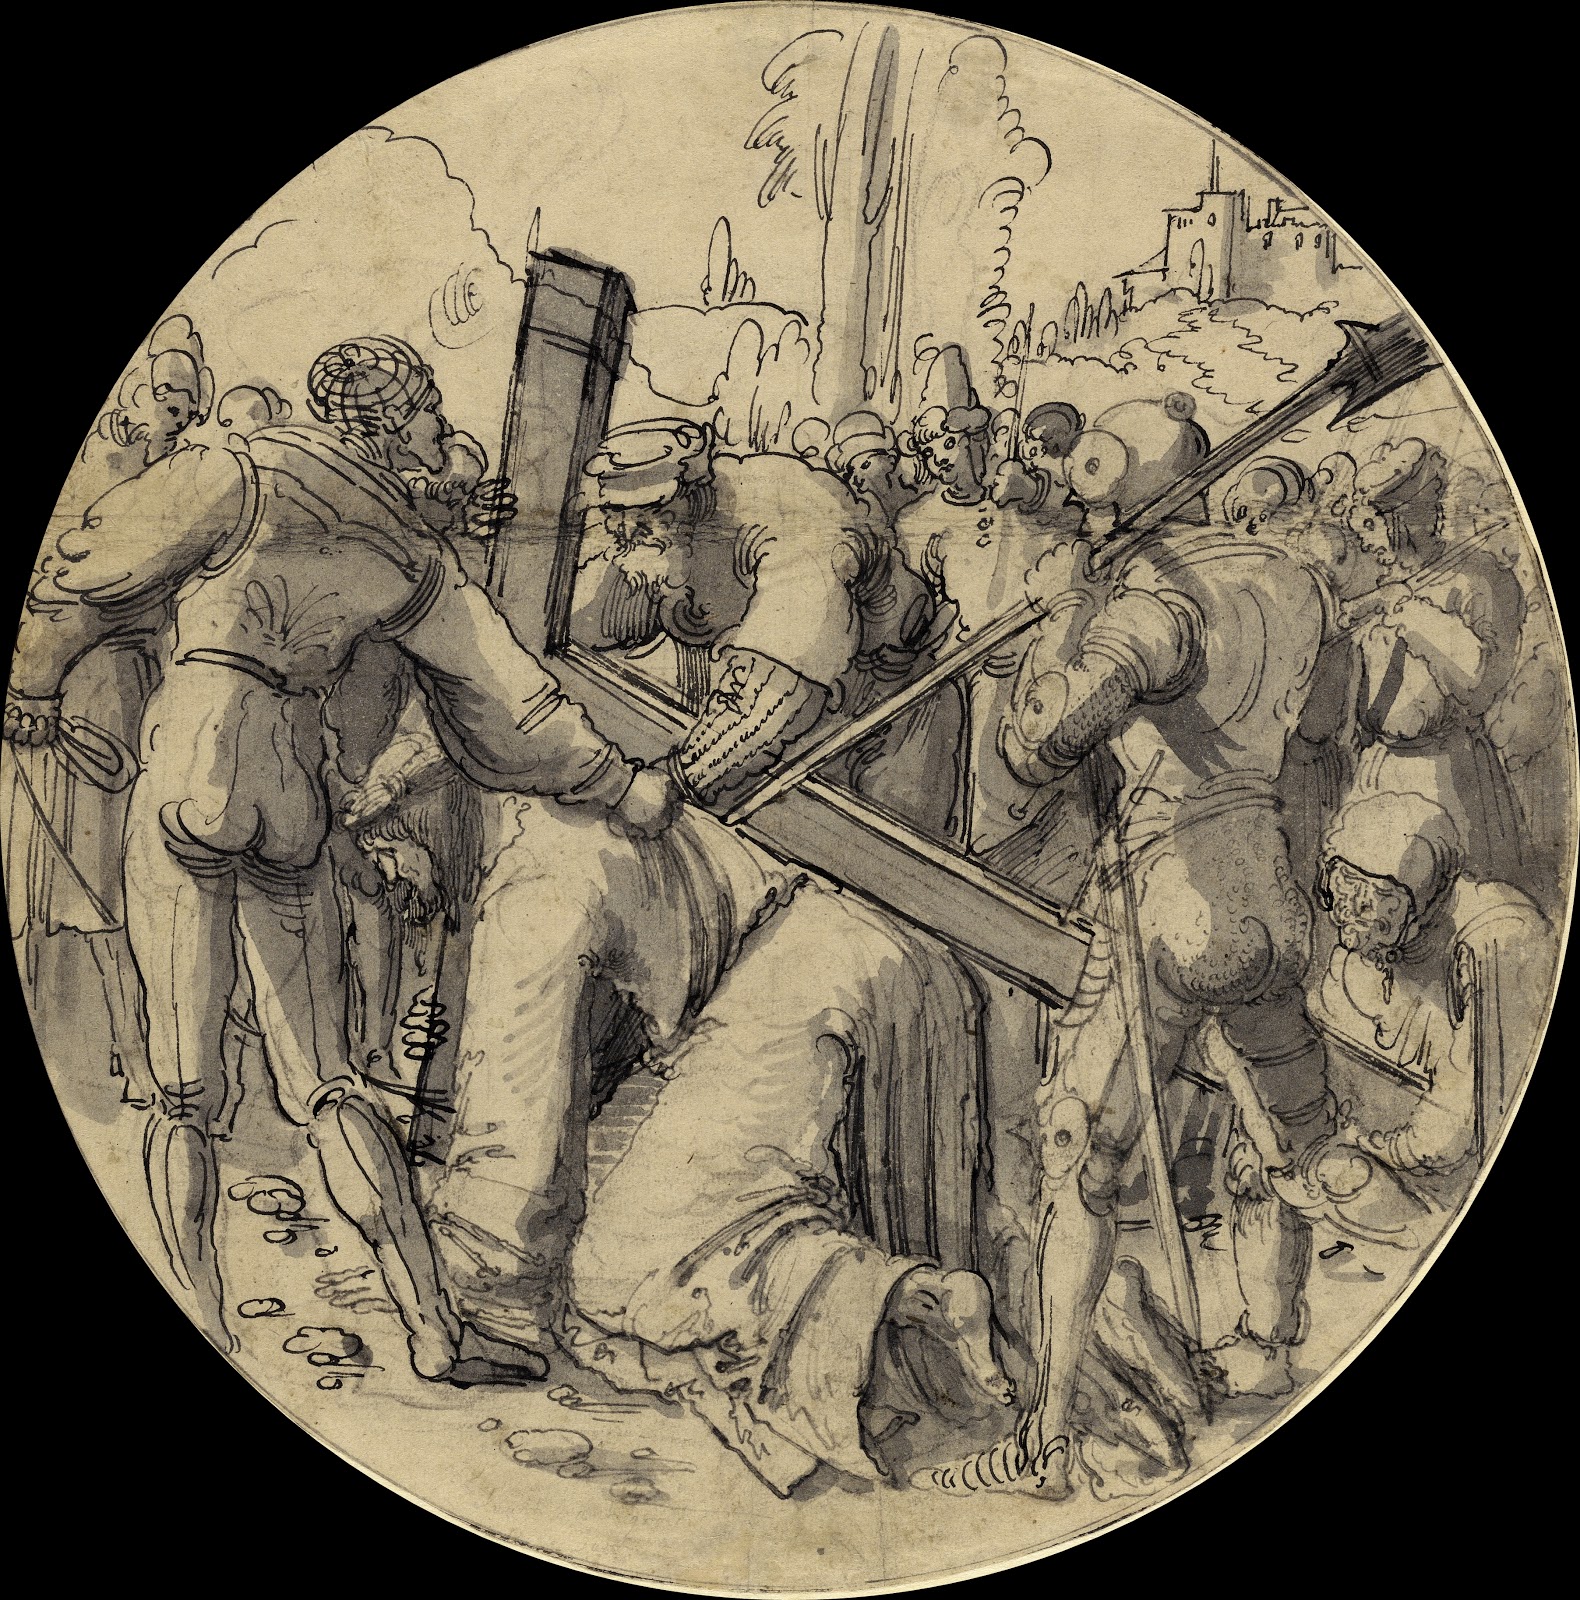 Albrecht+Altdorfer-1480-1538 (2).jpg